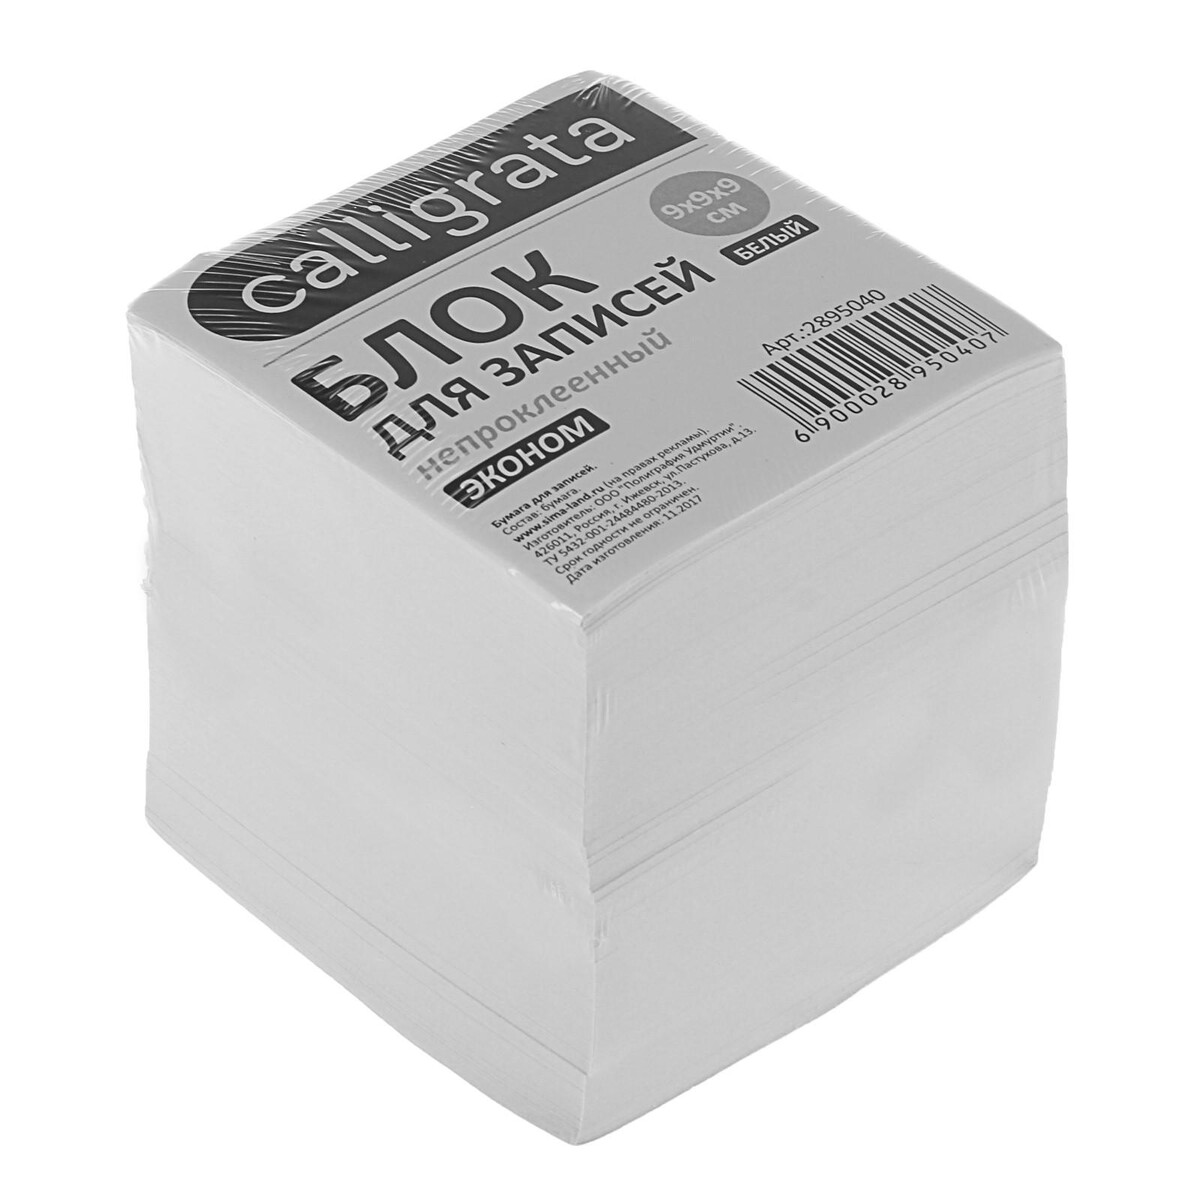 Блок бумаги для записей 9x9x9 см, calligrata, 55 г/м², 70-80%, непроклеенный, белый блок для записей bestar непроклеенный блок 15х10 см 200 листов белый белизна 90 92% 123004 18 шт